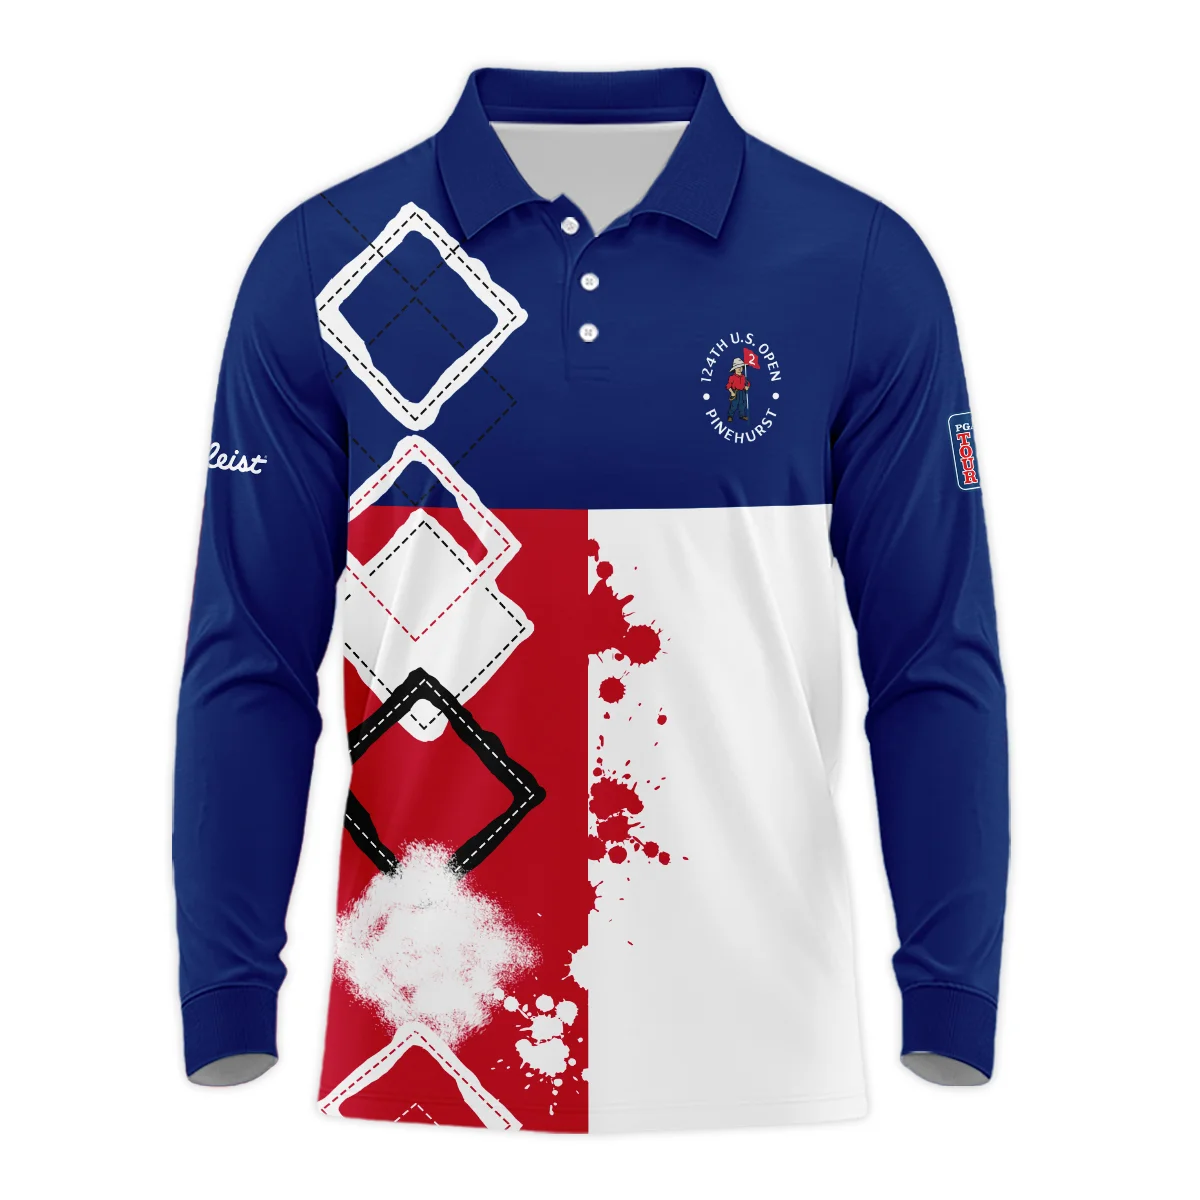 124th U.S. Open Pinehurst Titleist Unisex Sweatshirt Blue Red White Pattern Grunge All Over Print Sweatshirt